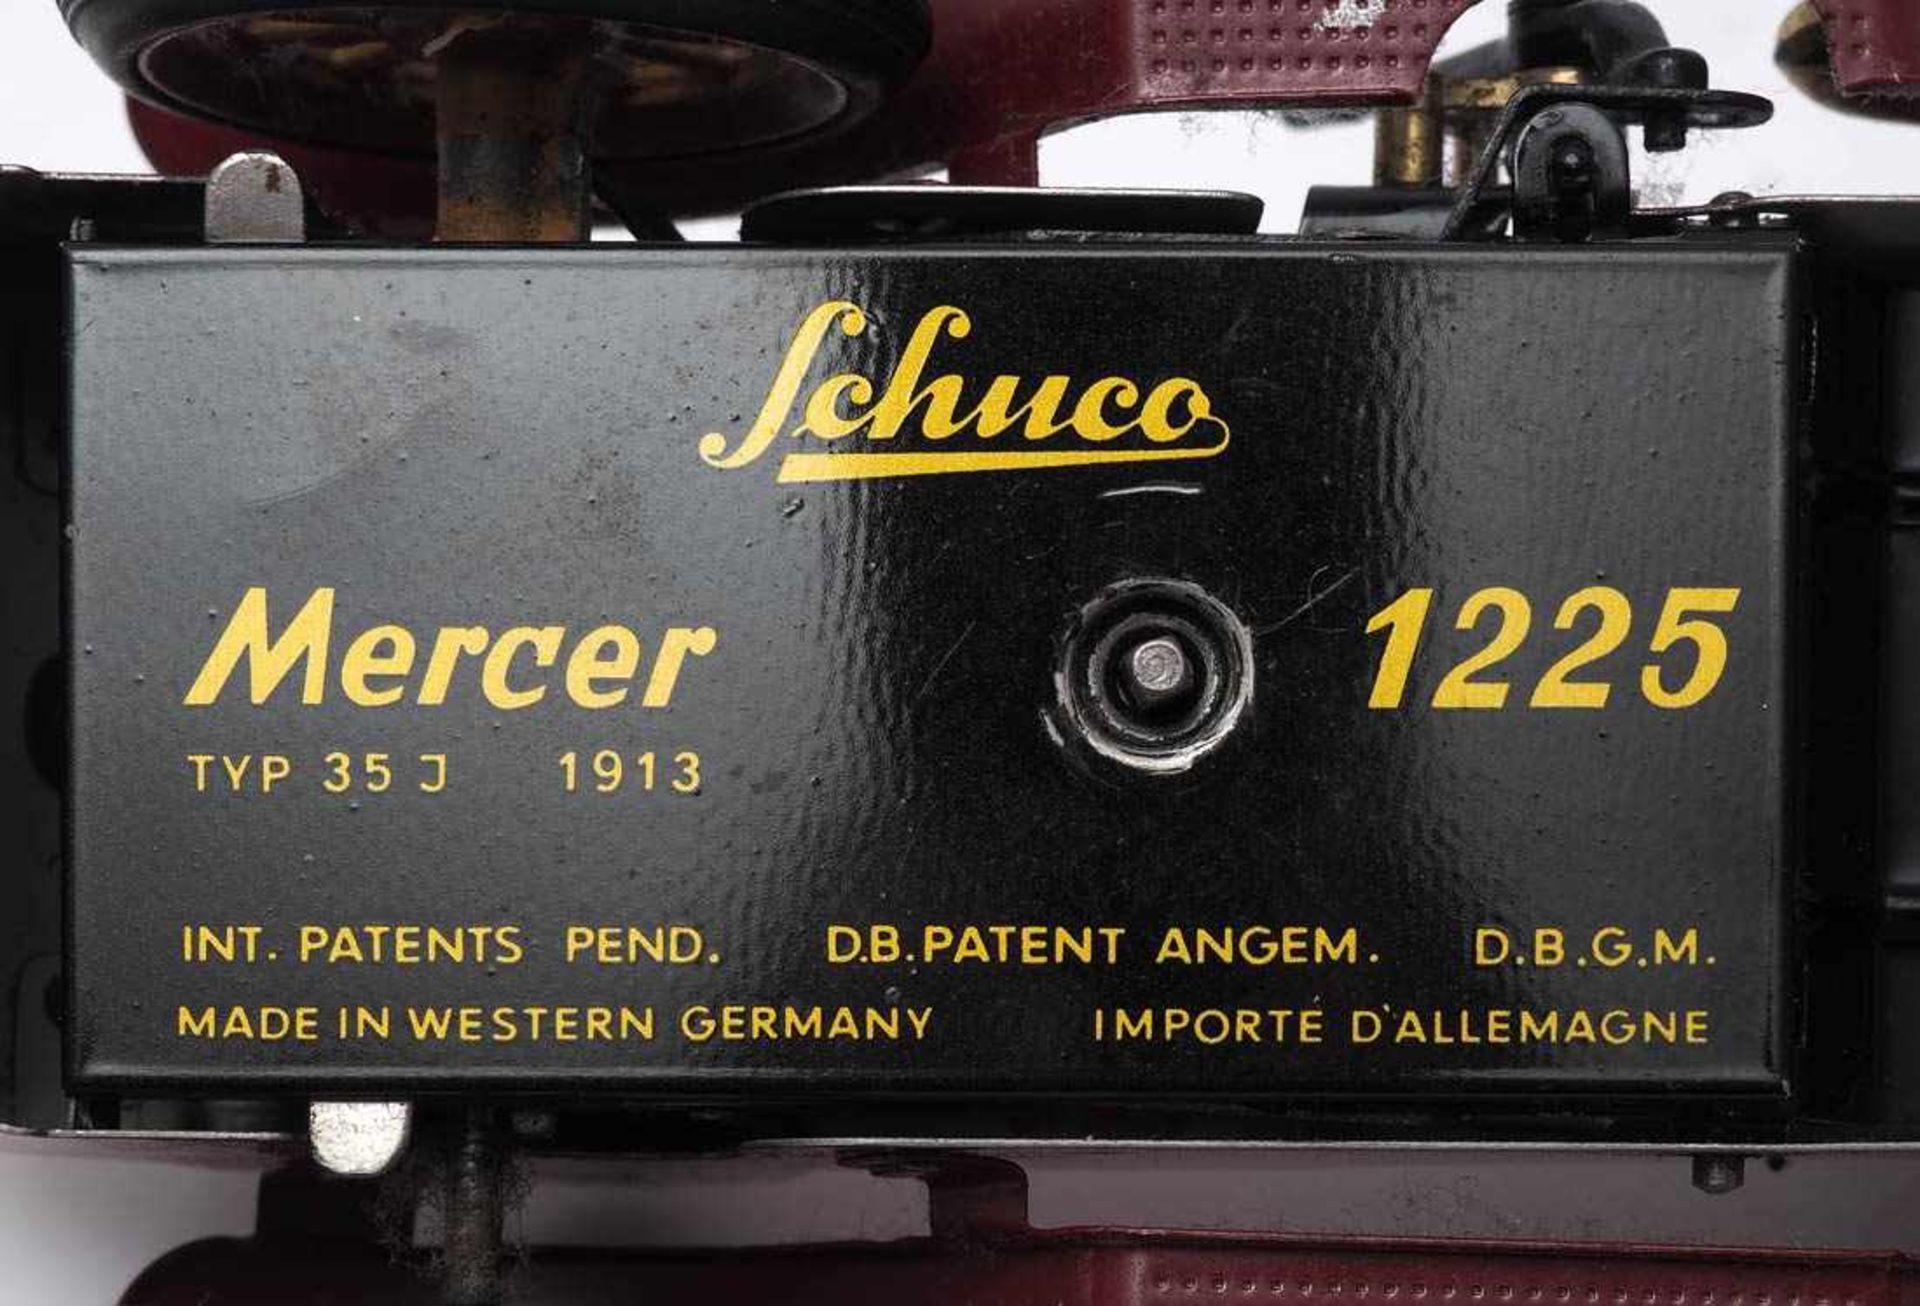 Mercer 1225, SchucoBlech, farbig lackiert. Aufzugmechanismus intakt, Originalschlüssel vorhanden. - Bild 4 aus 4